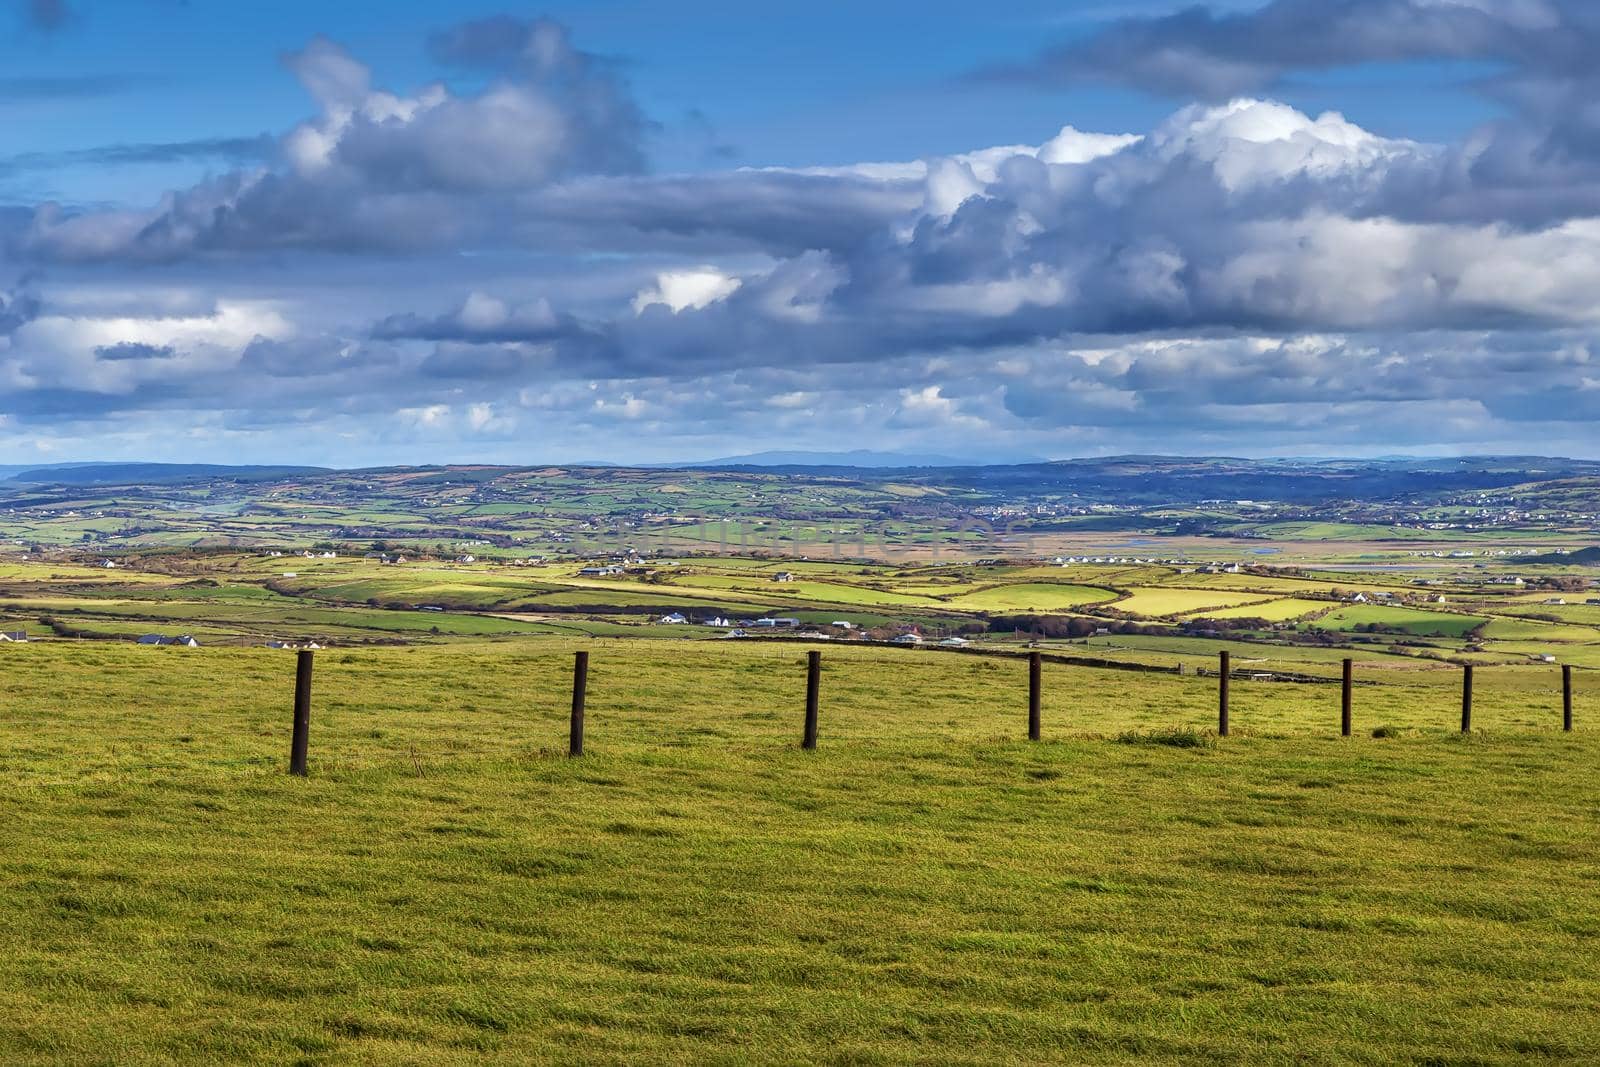 Landscape near Cliffs of Moher, Ireland by borisb17